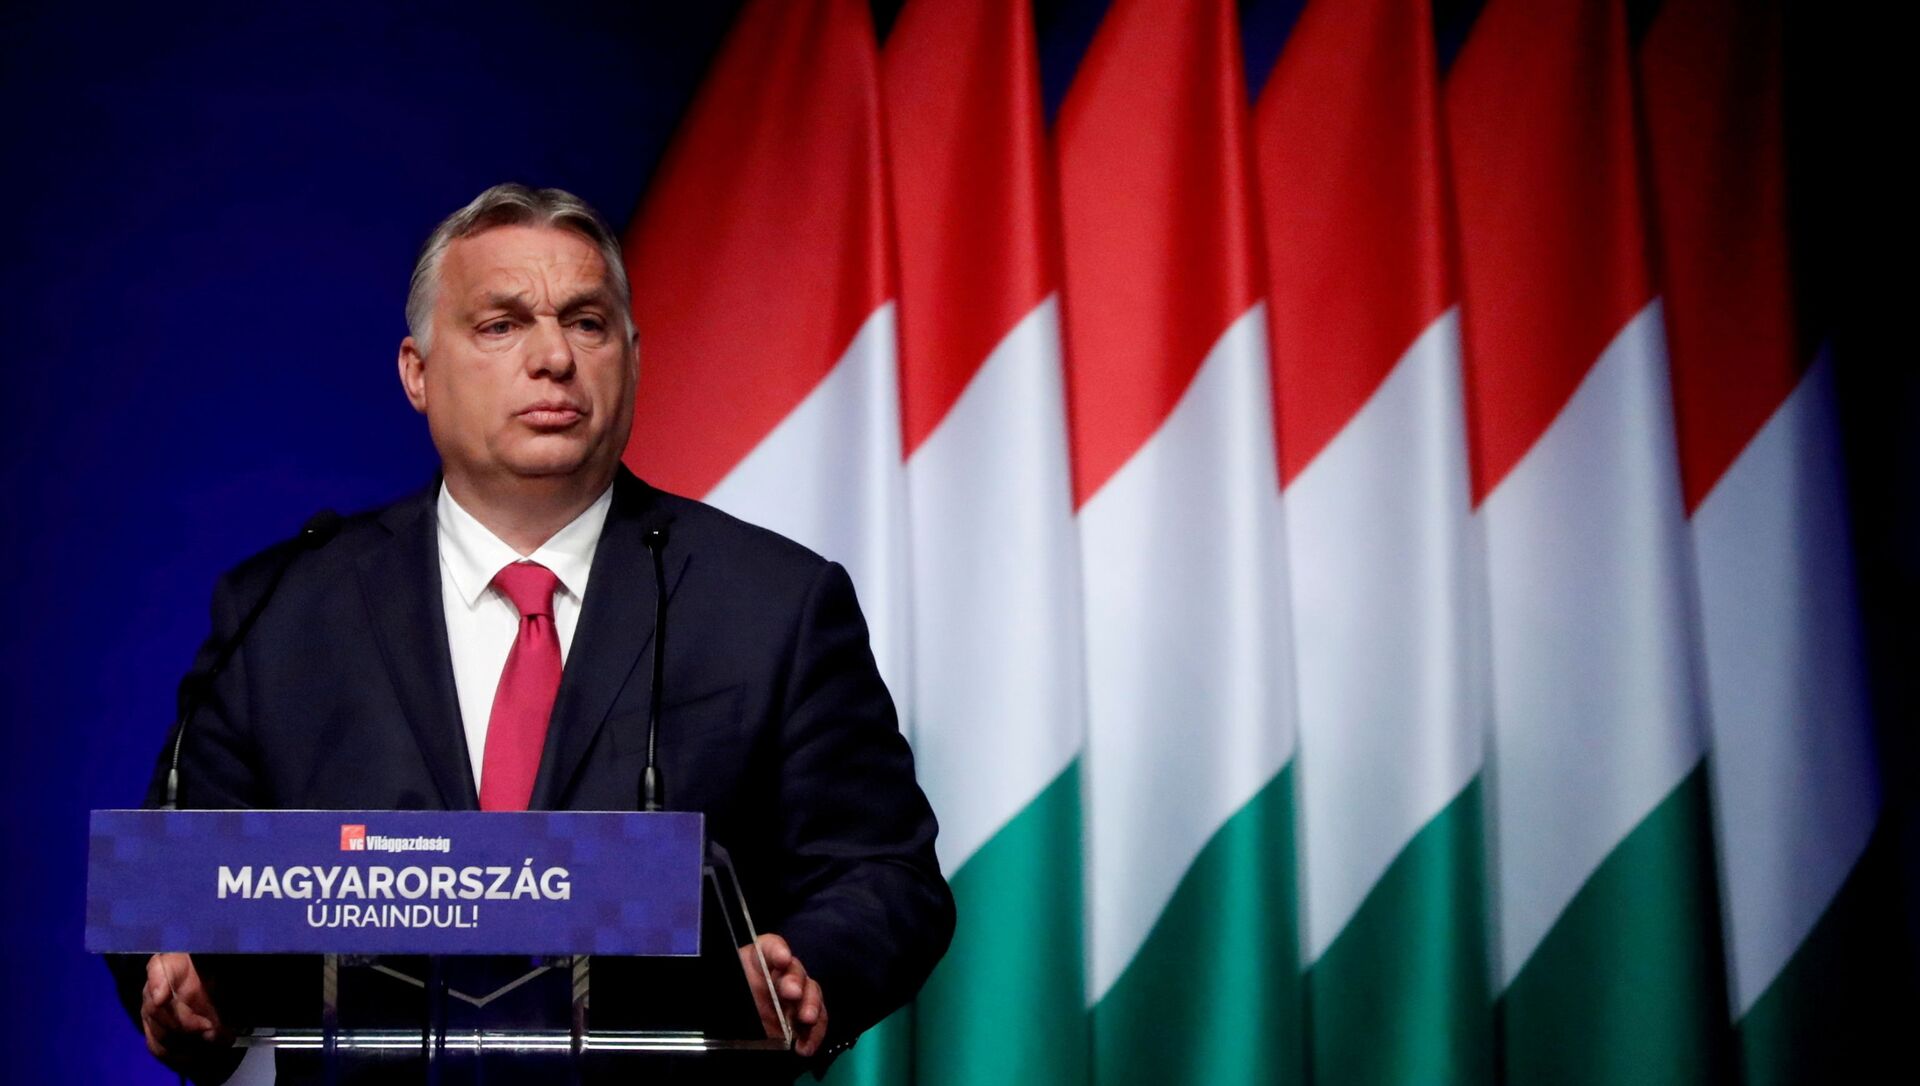 Viktor Orban à Budapest en juin 2021 - Sputnik Afrique, 1920, 28.06.2021